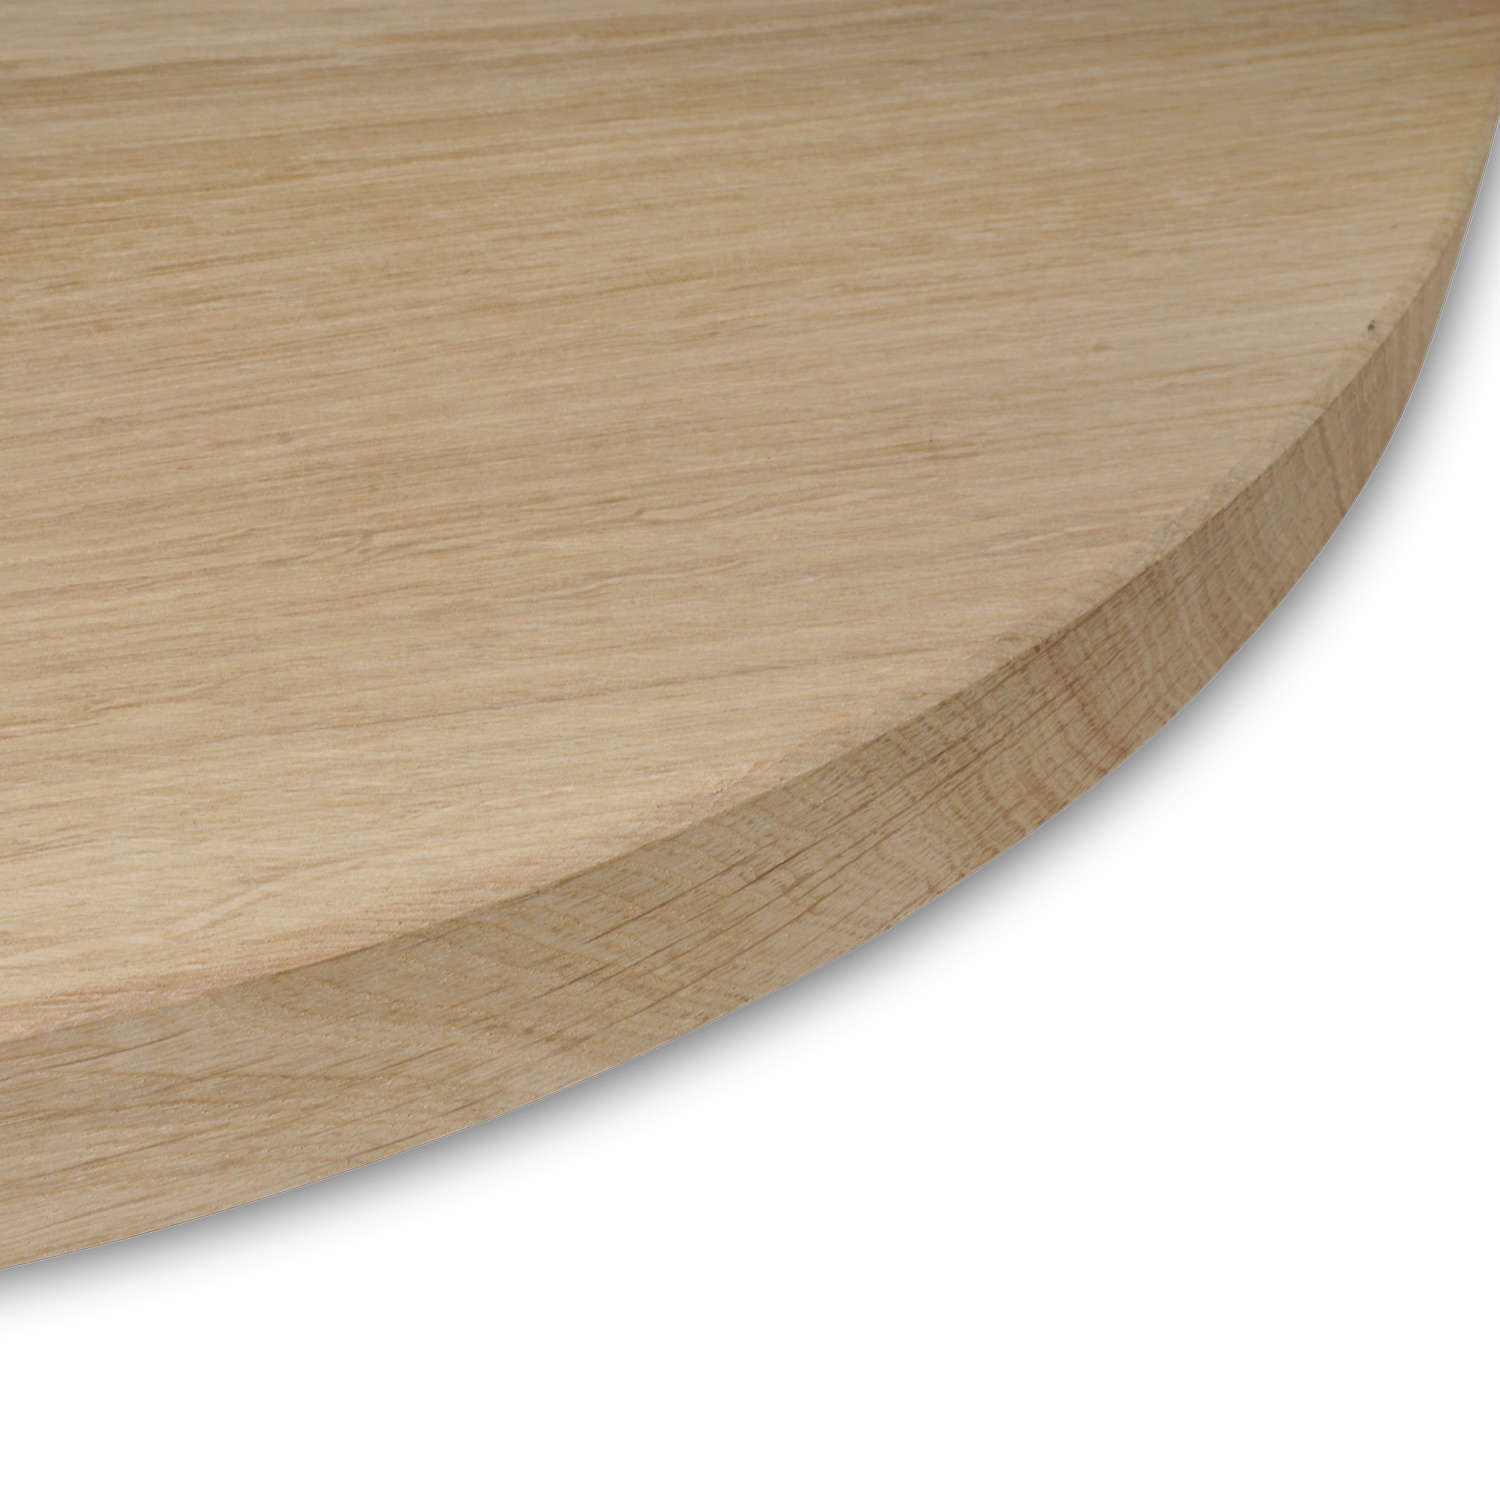  Rond eiken tafelblad op maat - 3 cm dik (1-laag) - Foutvrij Europees eikenhout - verlijmd kd 8-12% - diameter van 30 tot 180 cm